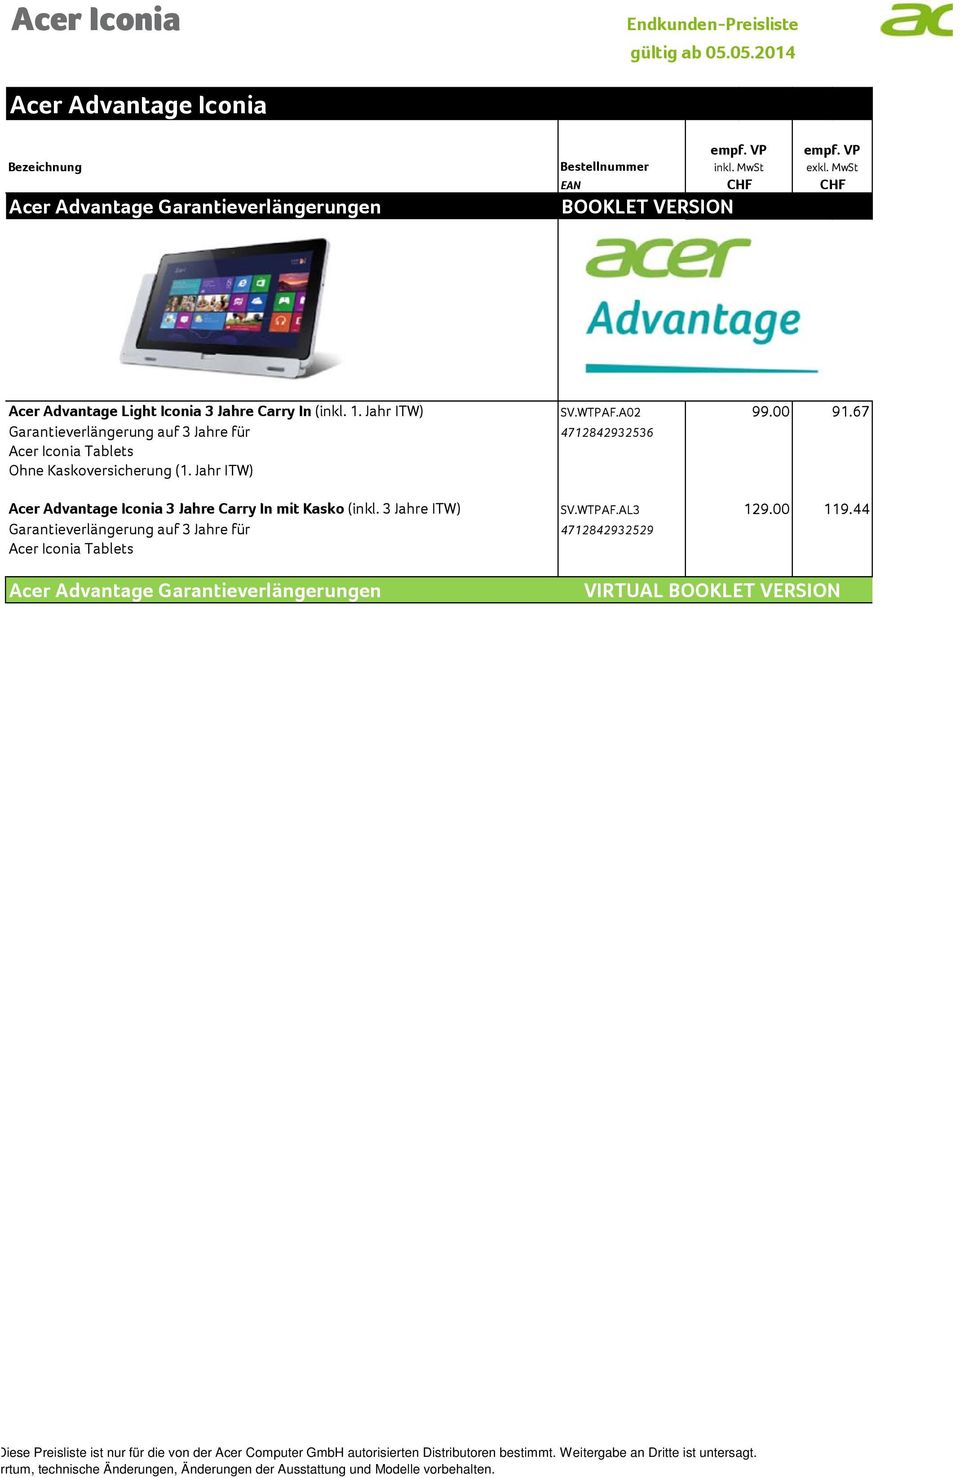 A02 Garantieverlängerung auf 3 Jahre für 4712842932536 Acer Iconia Tablets Ohne Kaskoversicherung